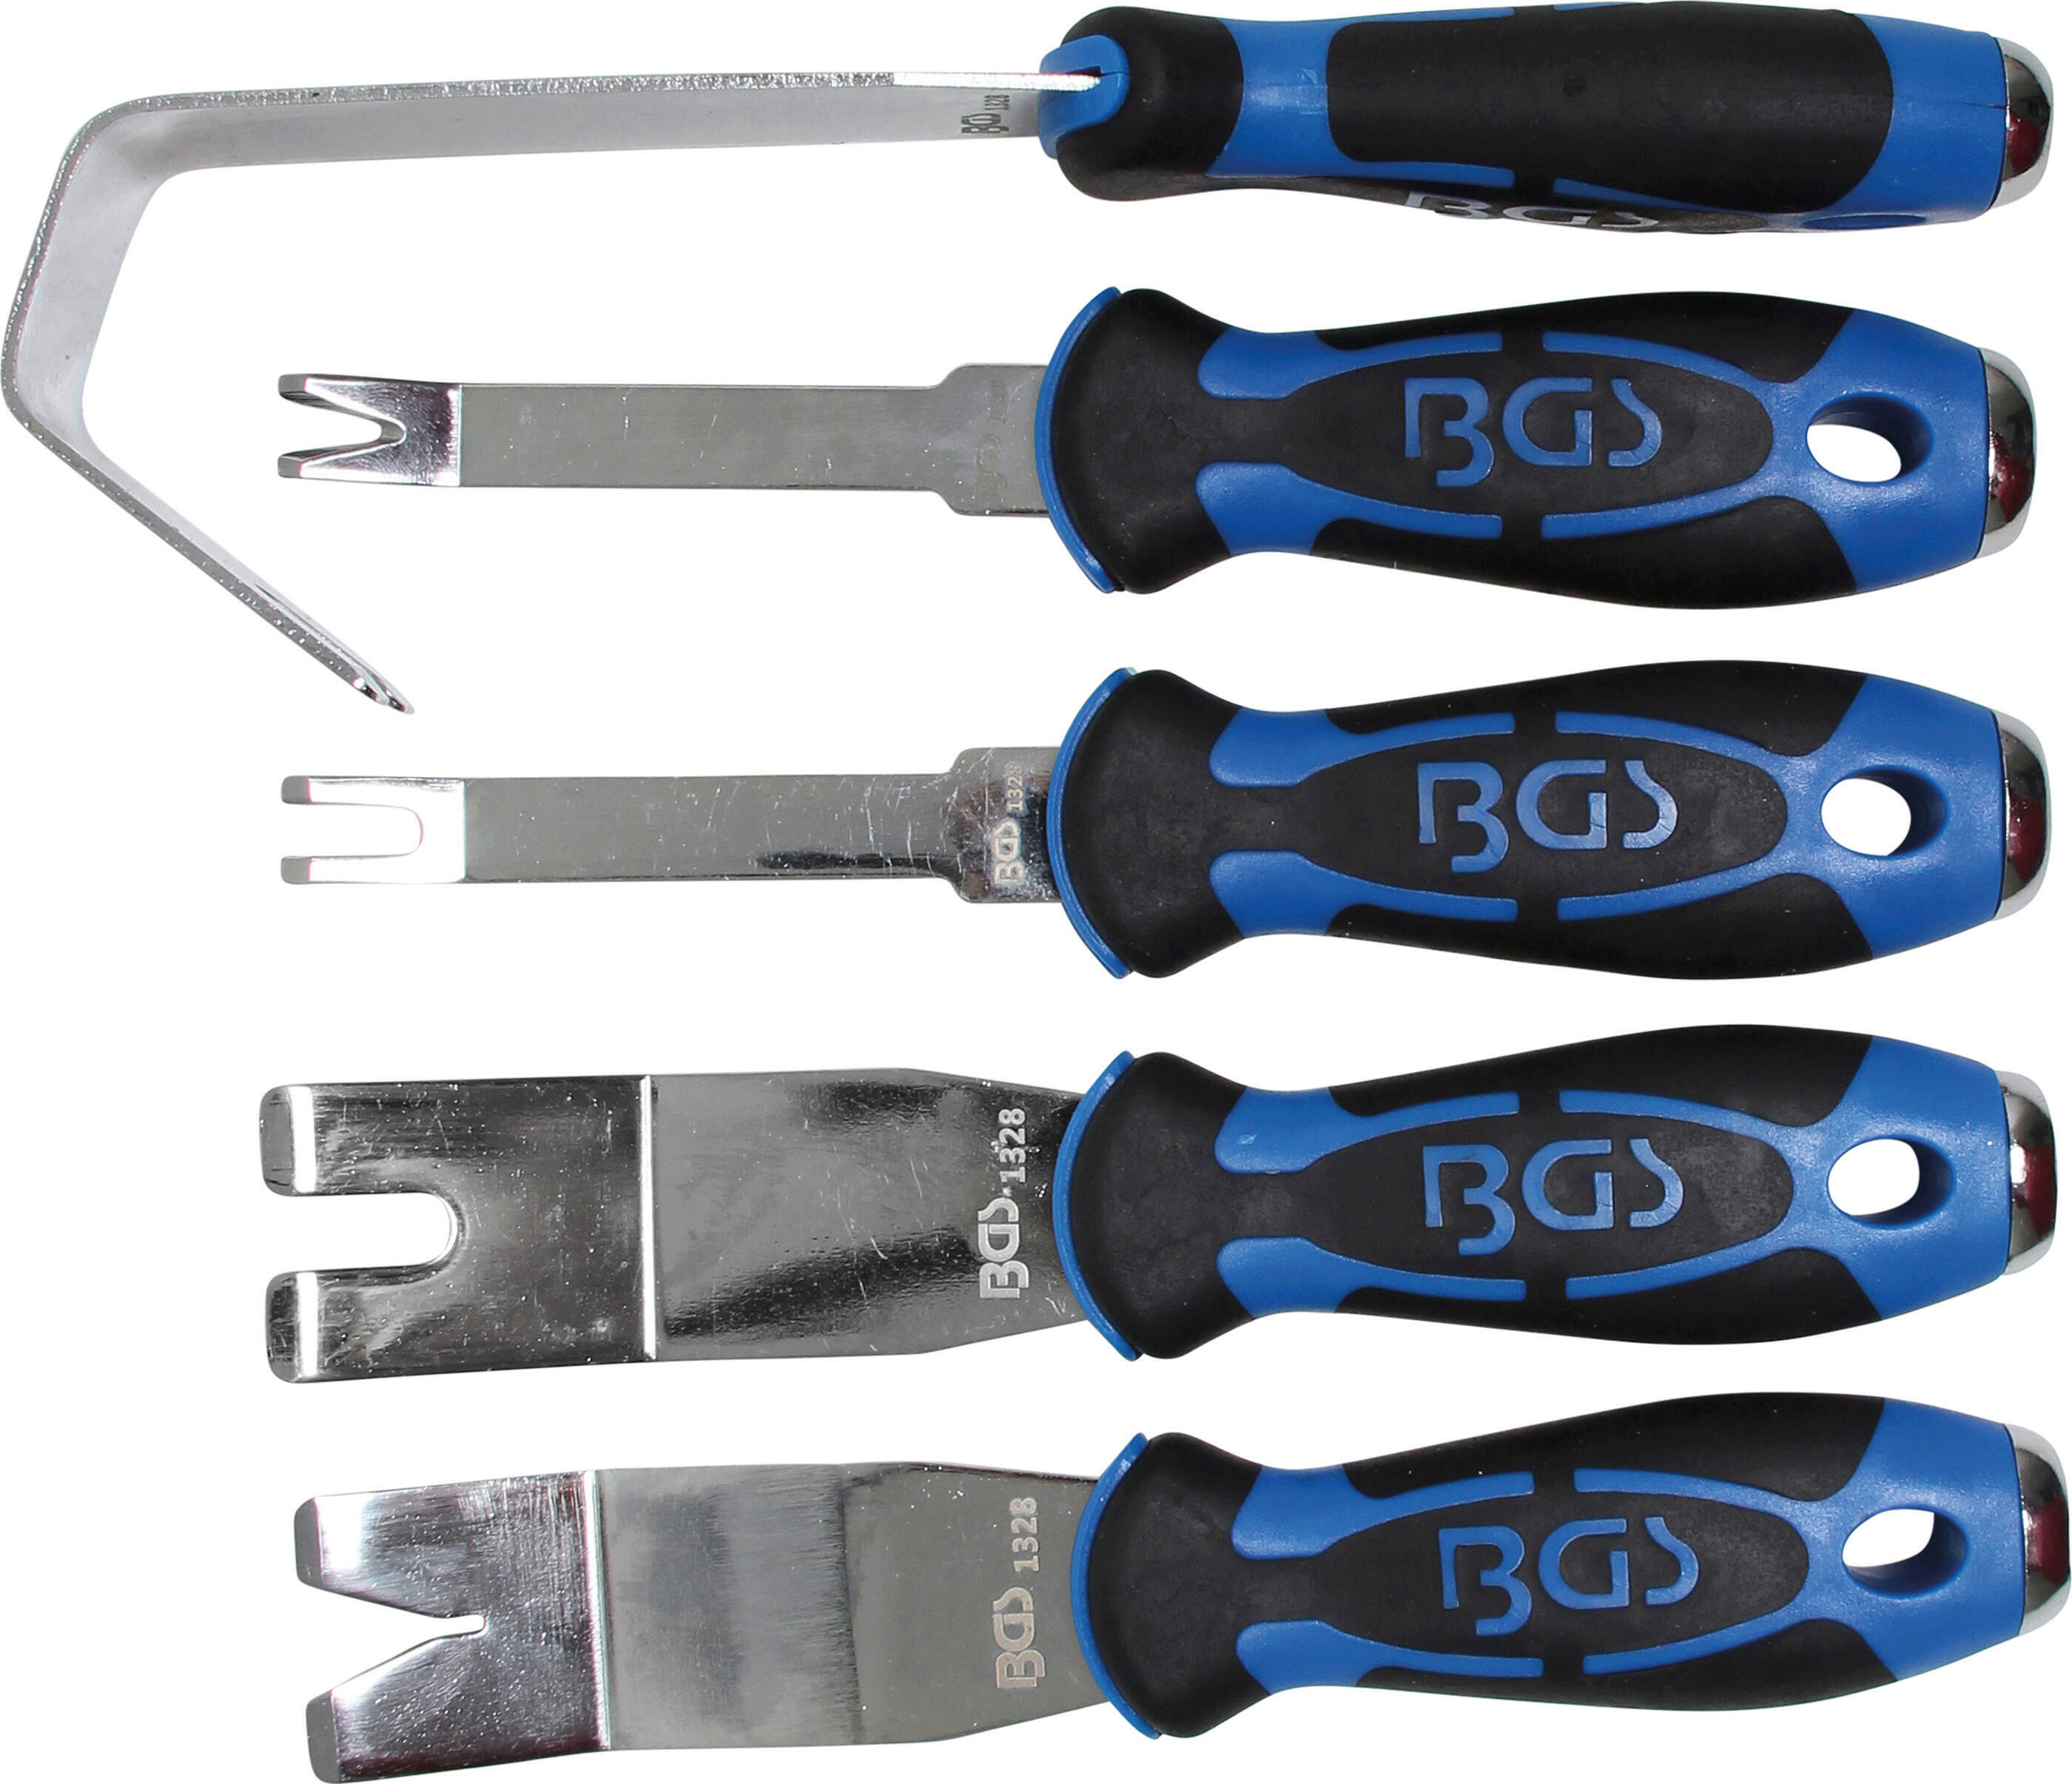 Body tools. BGS Technic монтировка, 250мм; 1530, BGS Technic. Ремувер металлический для снятия обшивки. BGS набор напильников 5 шт.. Инструмент для щипки собак.